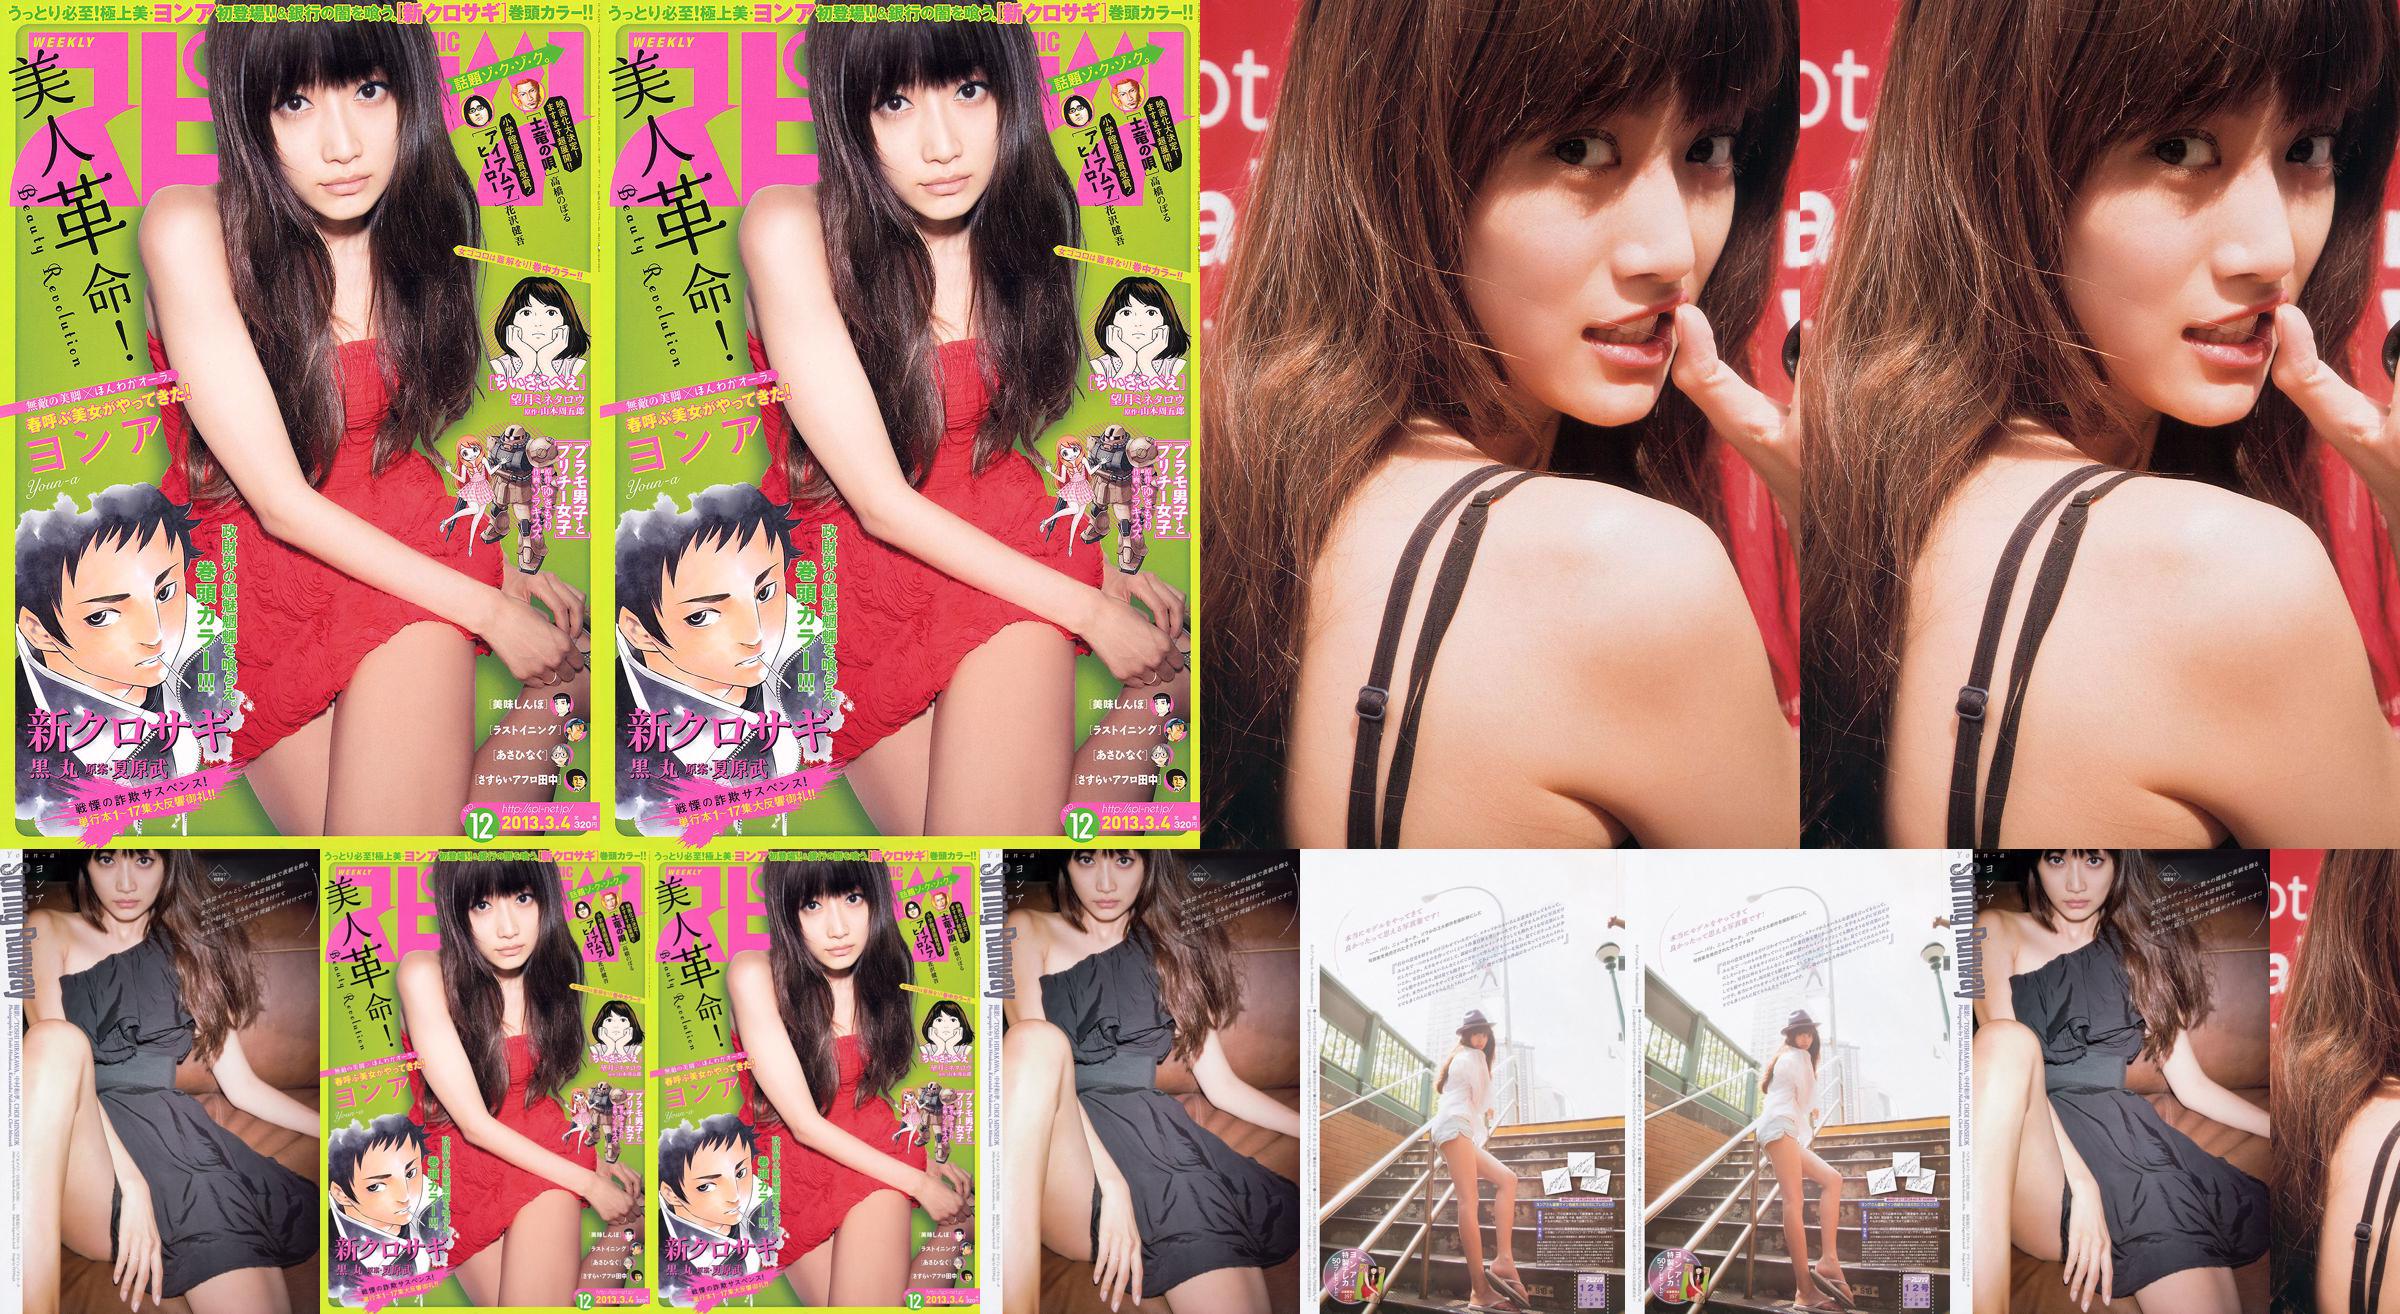 [Wöchentliche Big Comic Spirits] No. ン No. 2013 No.12 Photo Magazine No.ae7bfd Seite 1